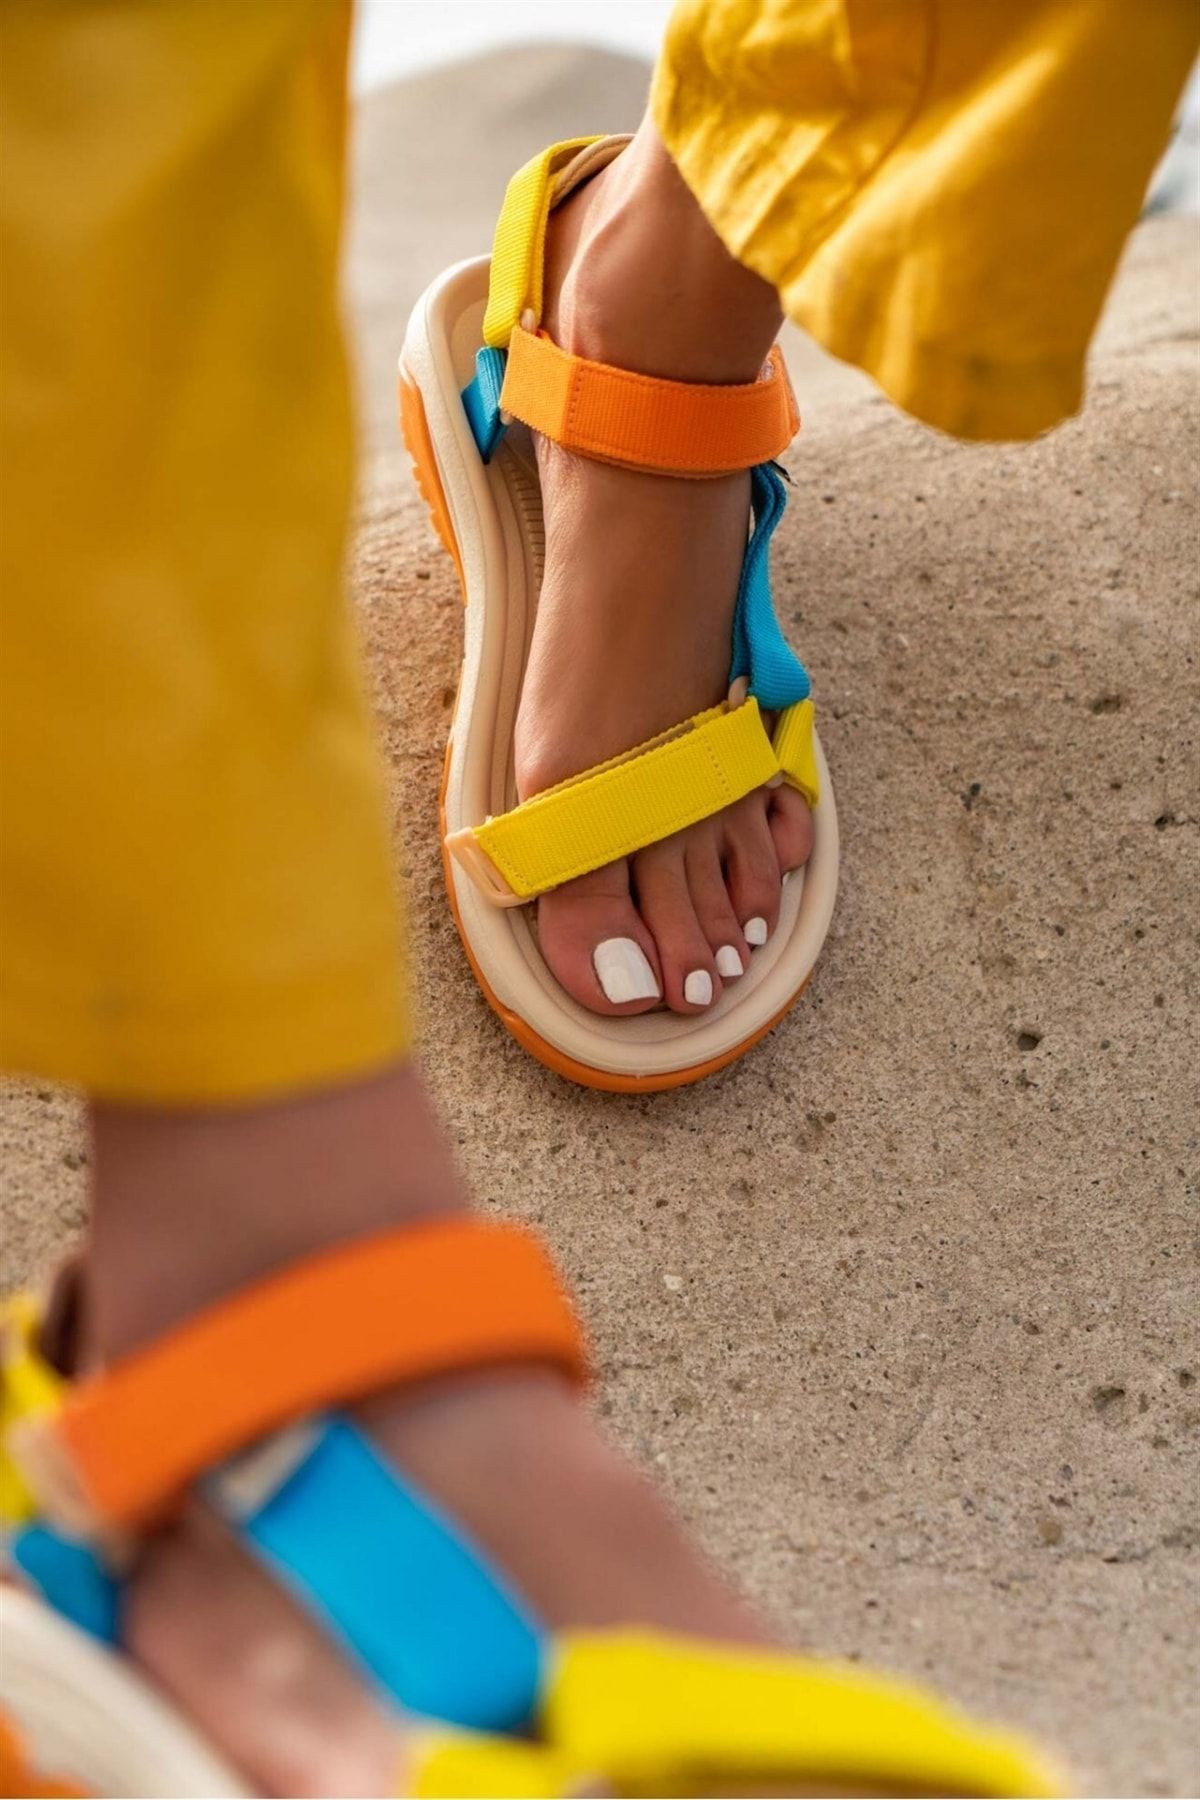 NİŞANTAŞI SHOES Step Sarı Turuncu Mavi Cırtlı Düz Taban Kadın Sandalet